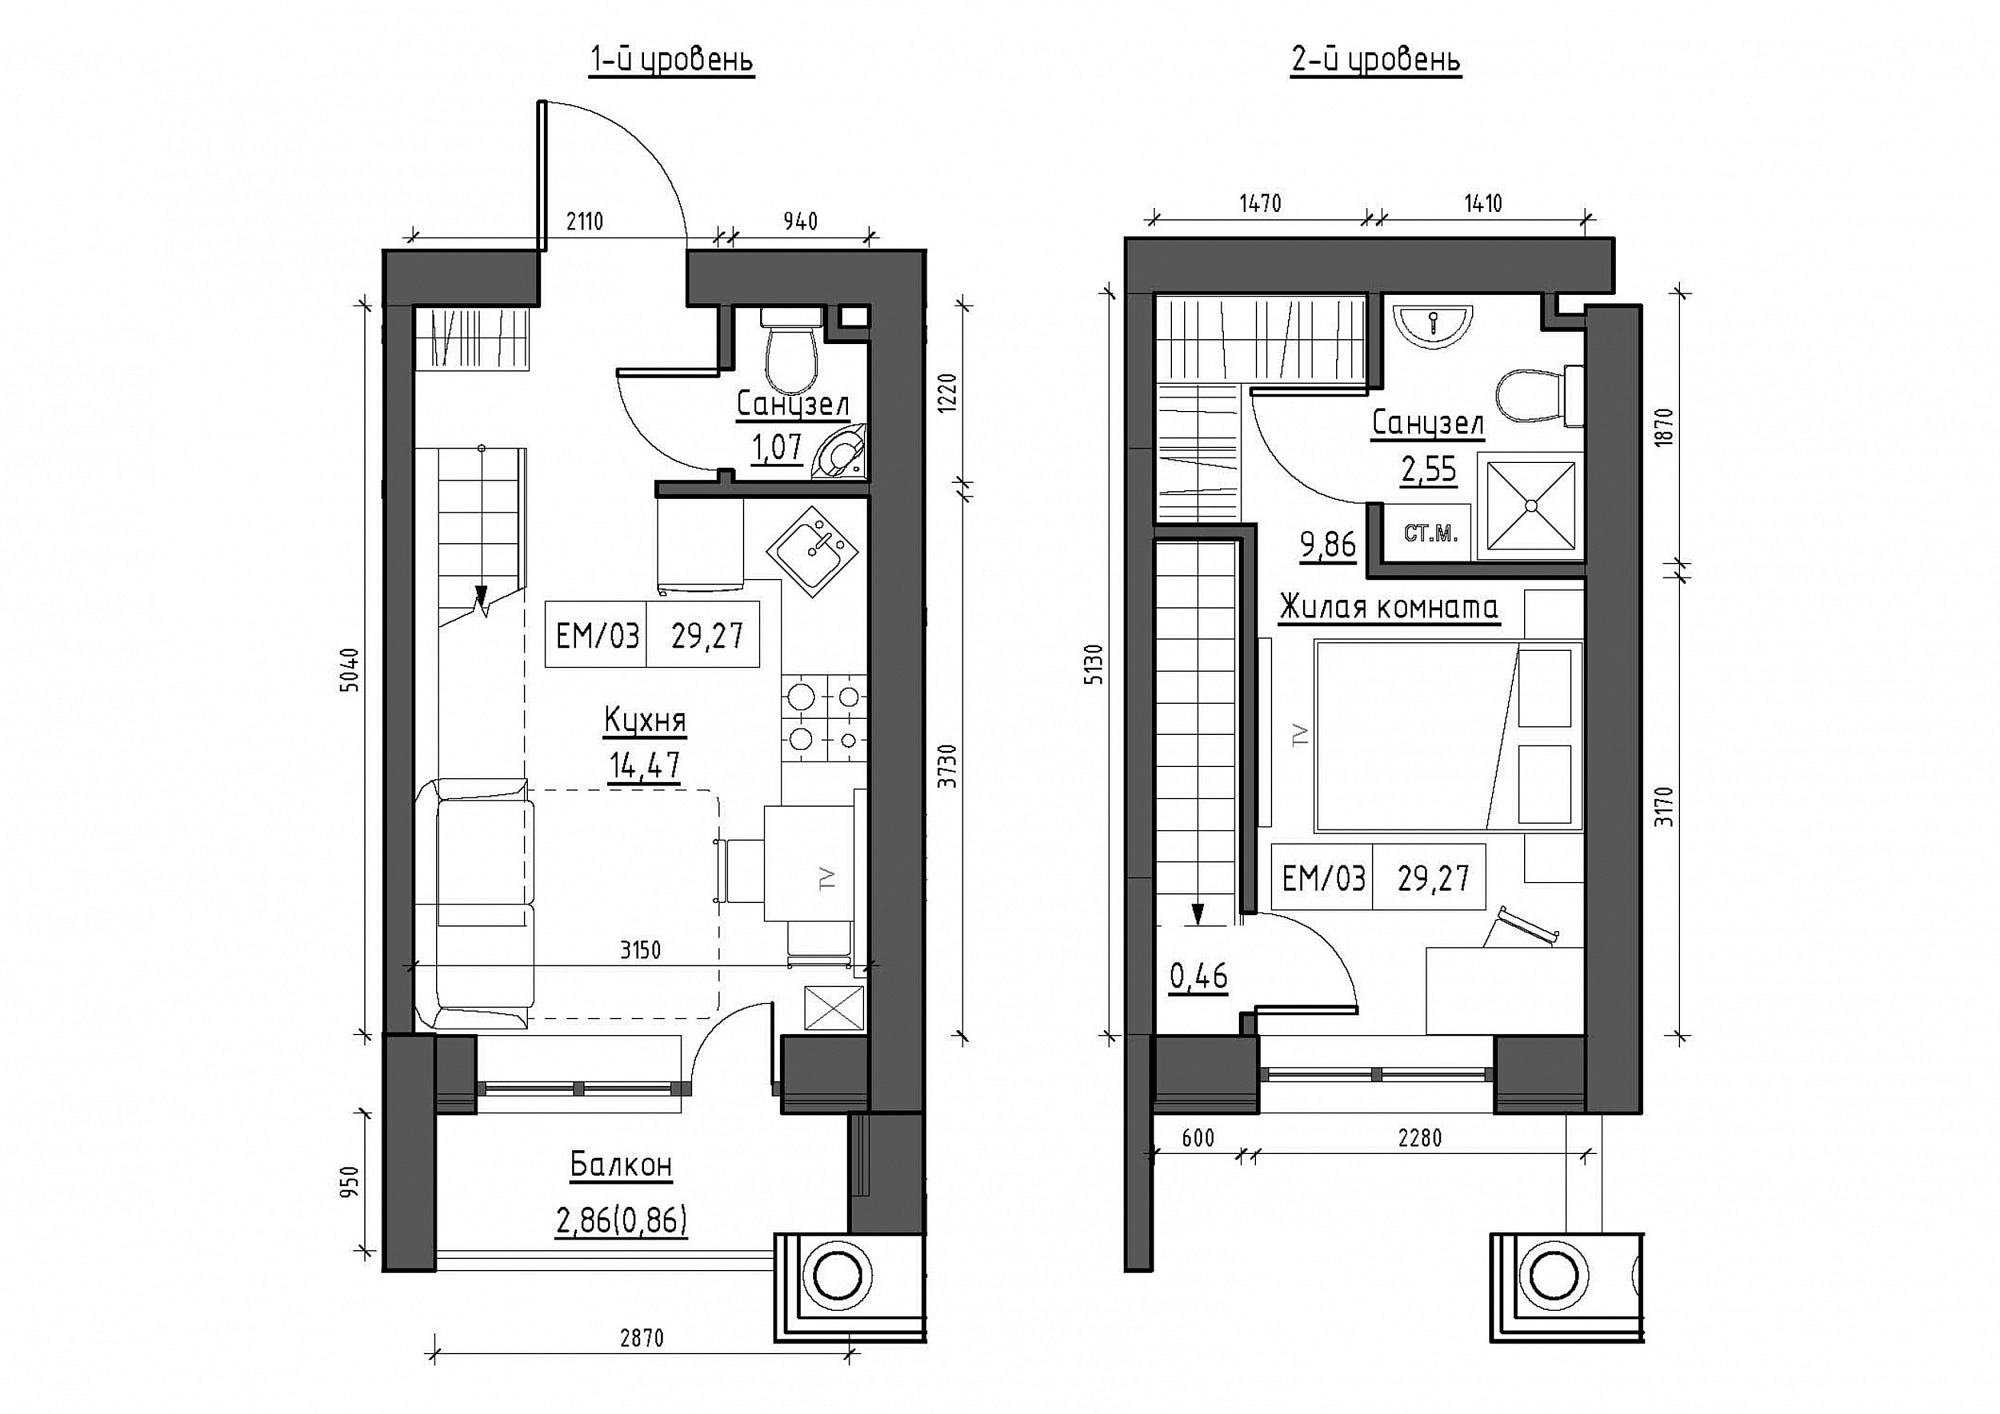 Planning 2-lvl flats area 29.27m2, KS-011-05/0013.